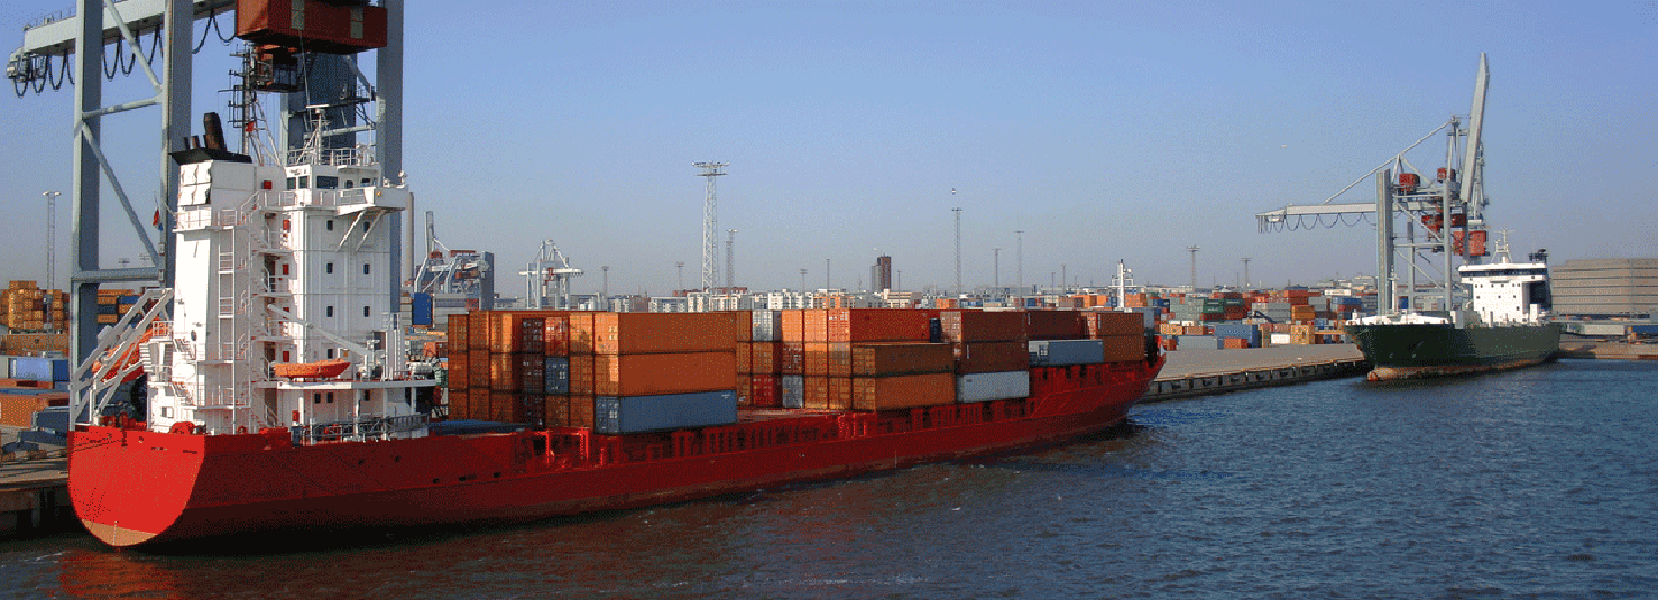 shipping via waterways